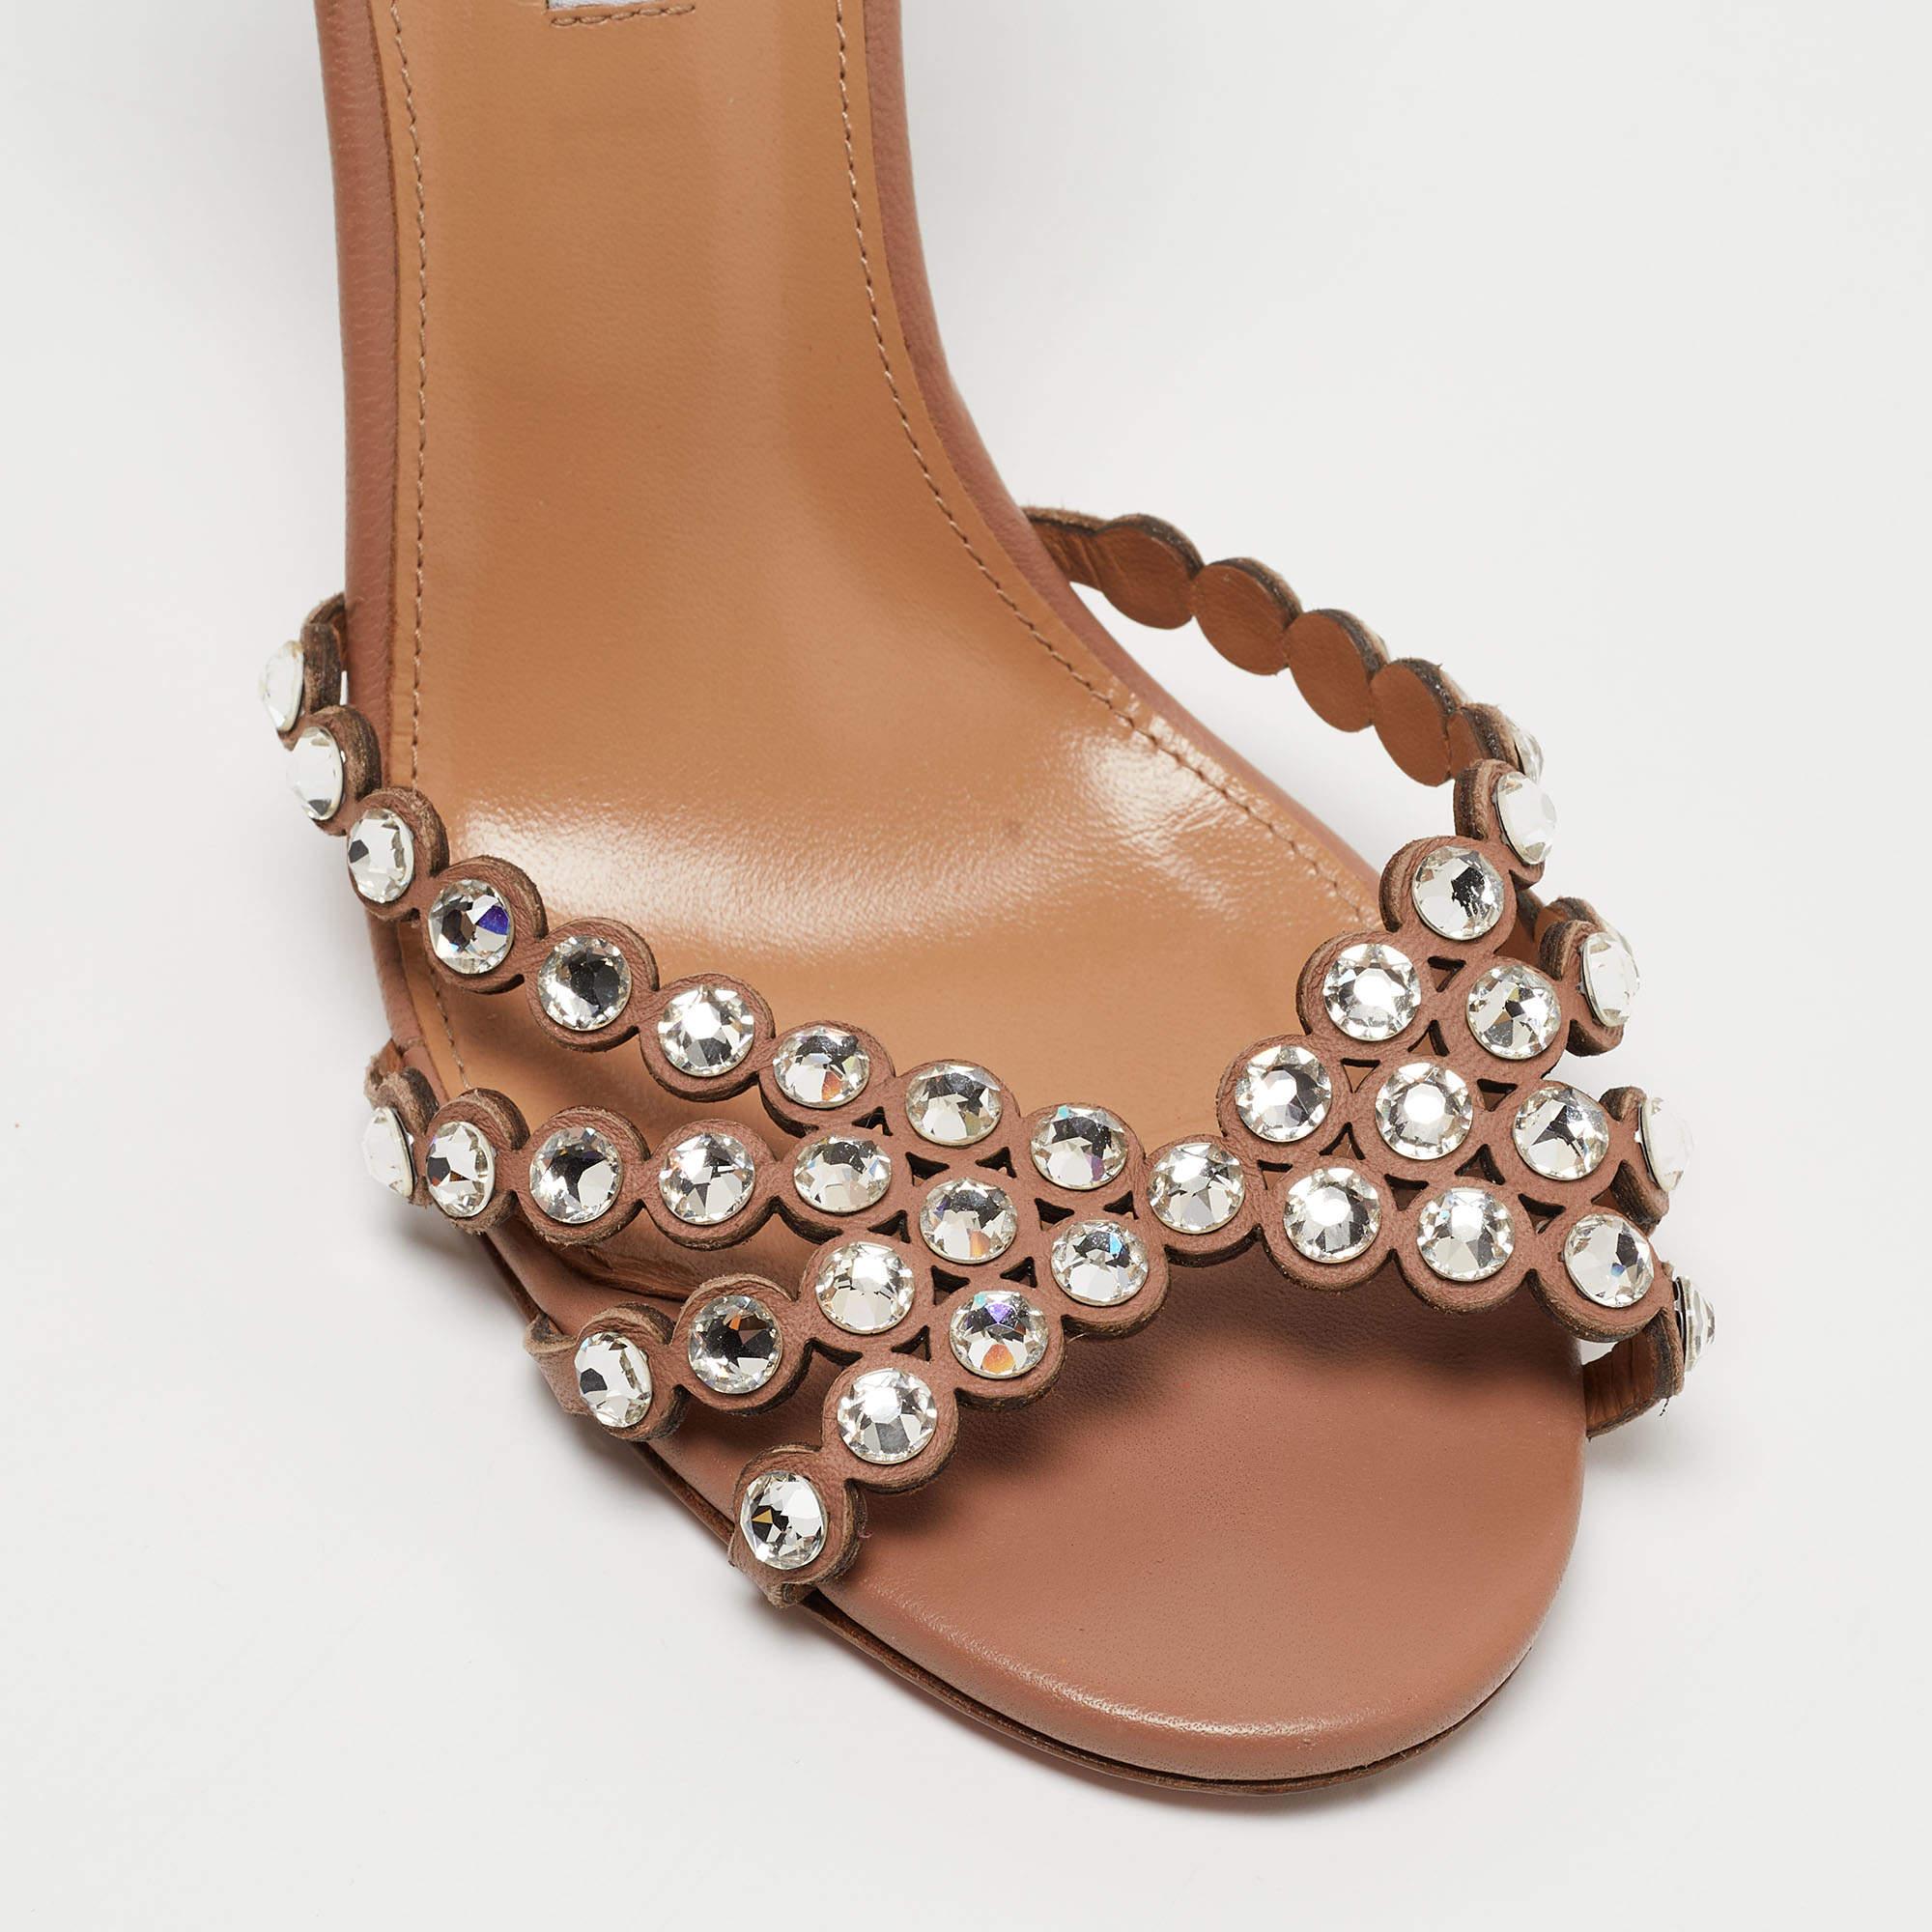 Aquazzura Beige Leather Crystal-Embellished Ankle Strap Sandals Size 39 1